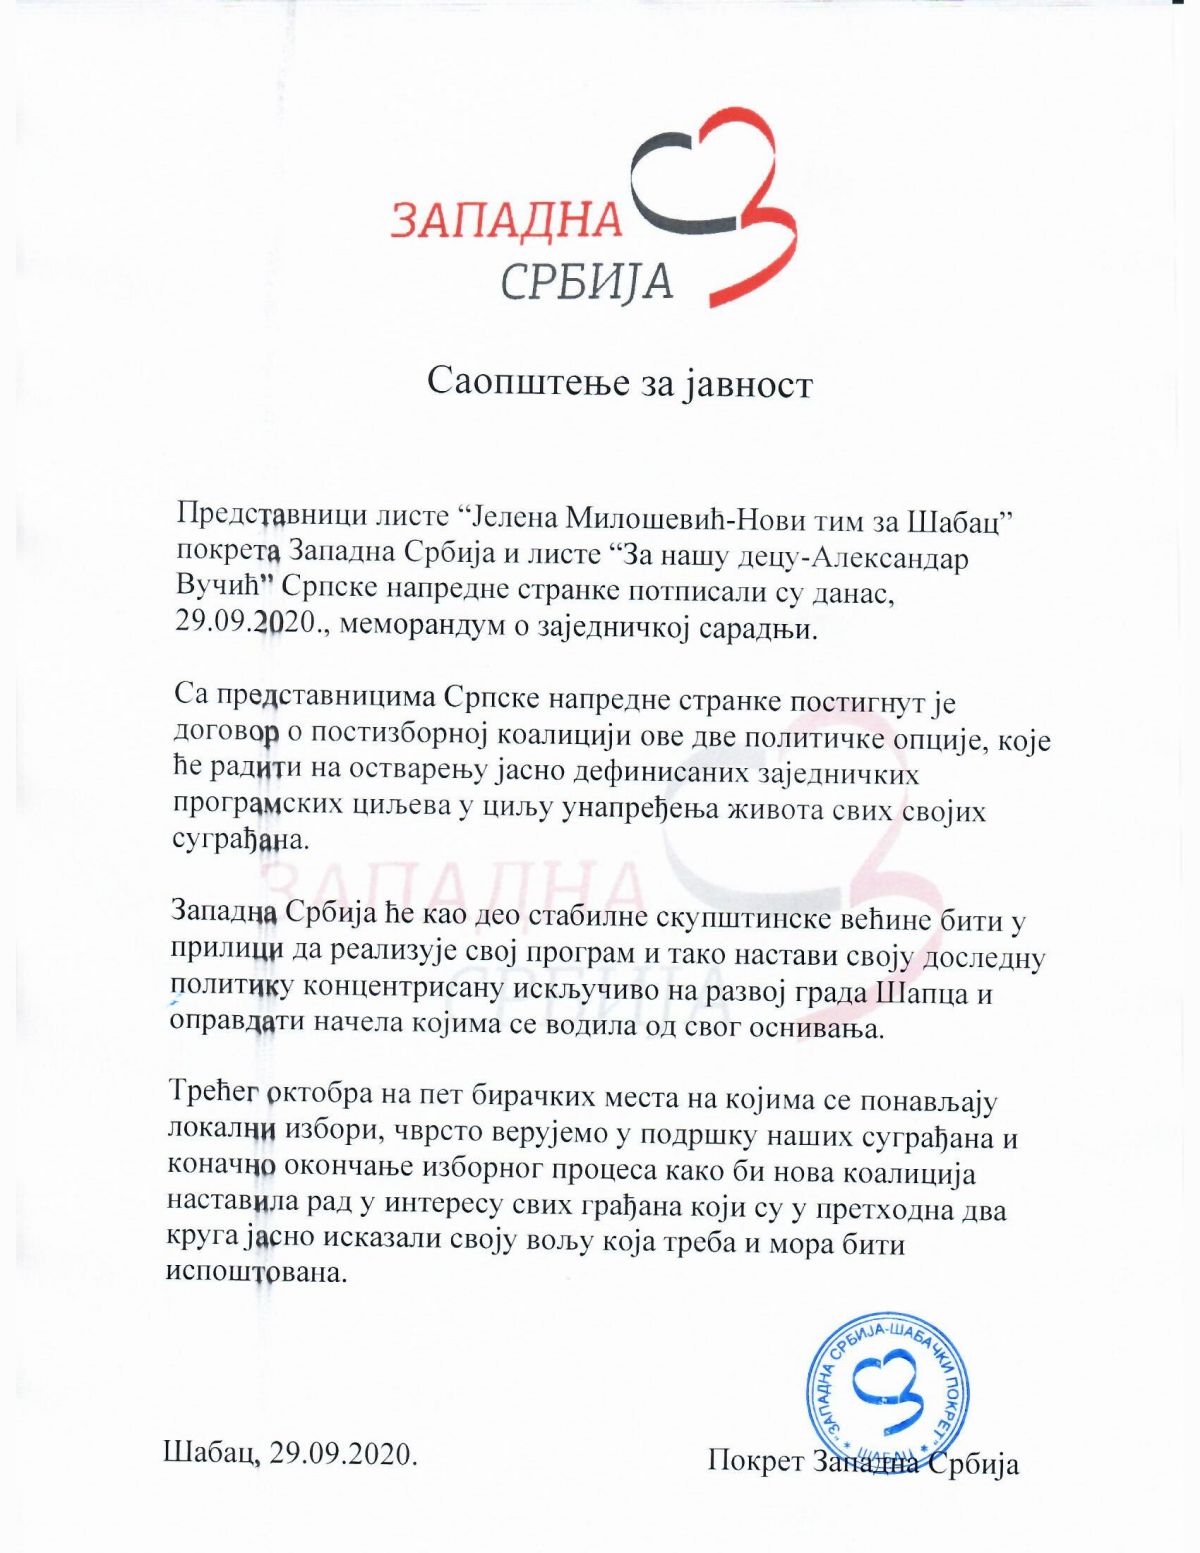 Pokret Zapadna Srbija: Memorandum o zajedničkoj saradnji sa SNS